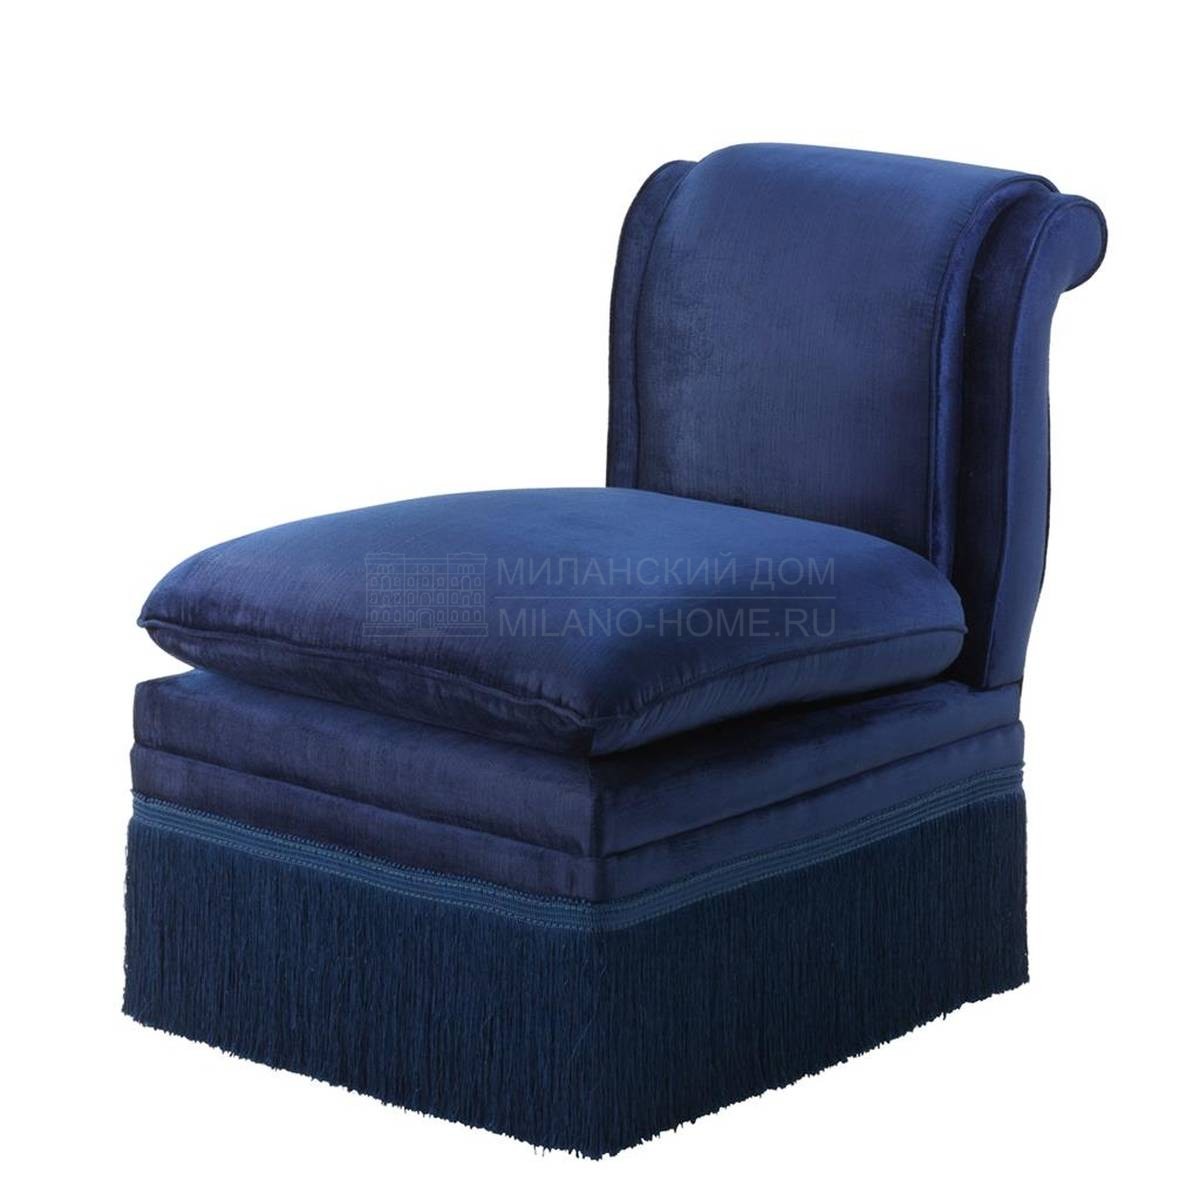 Кресло Boucheron blue из Голландии фабрики EICHHOLTZ